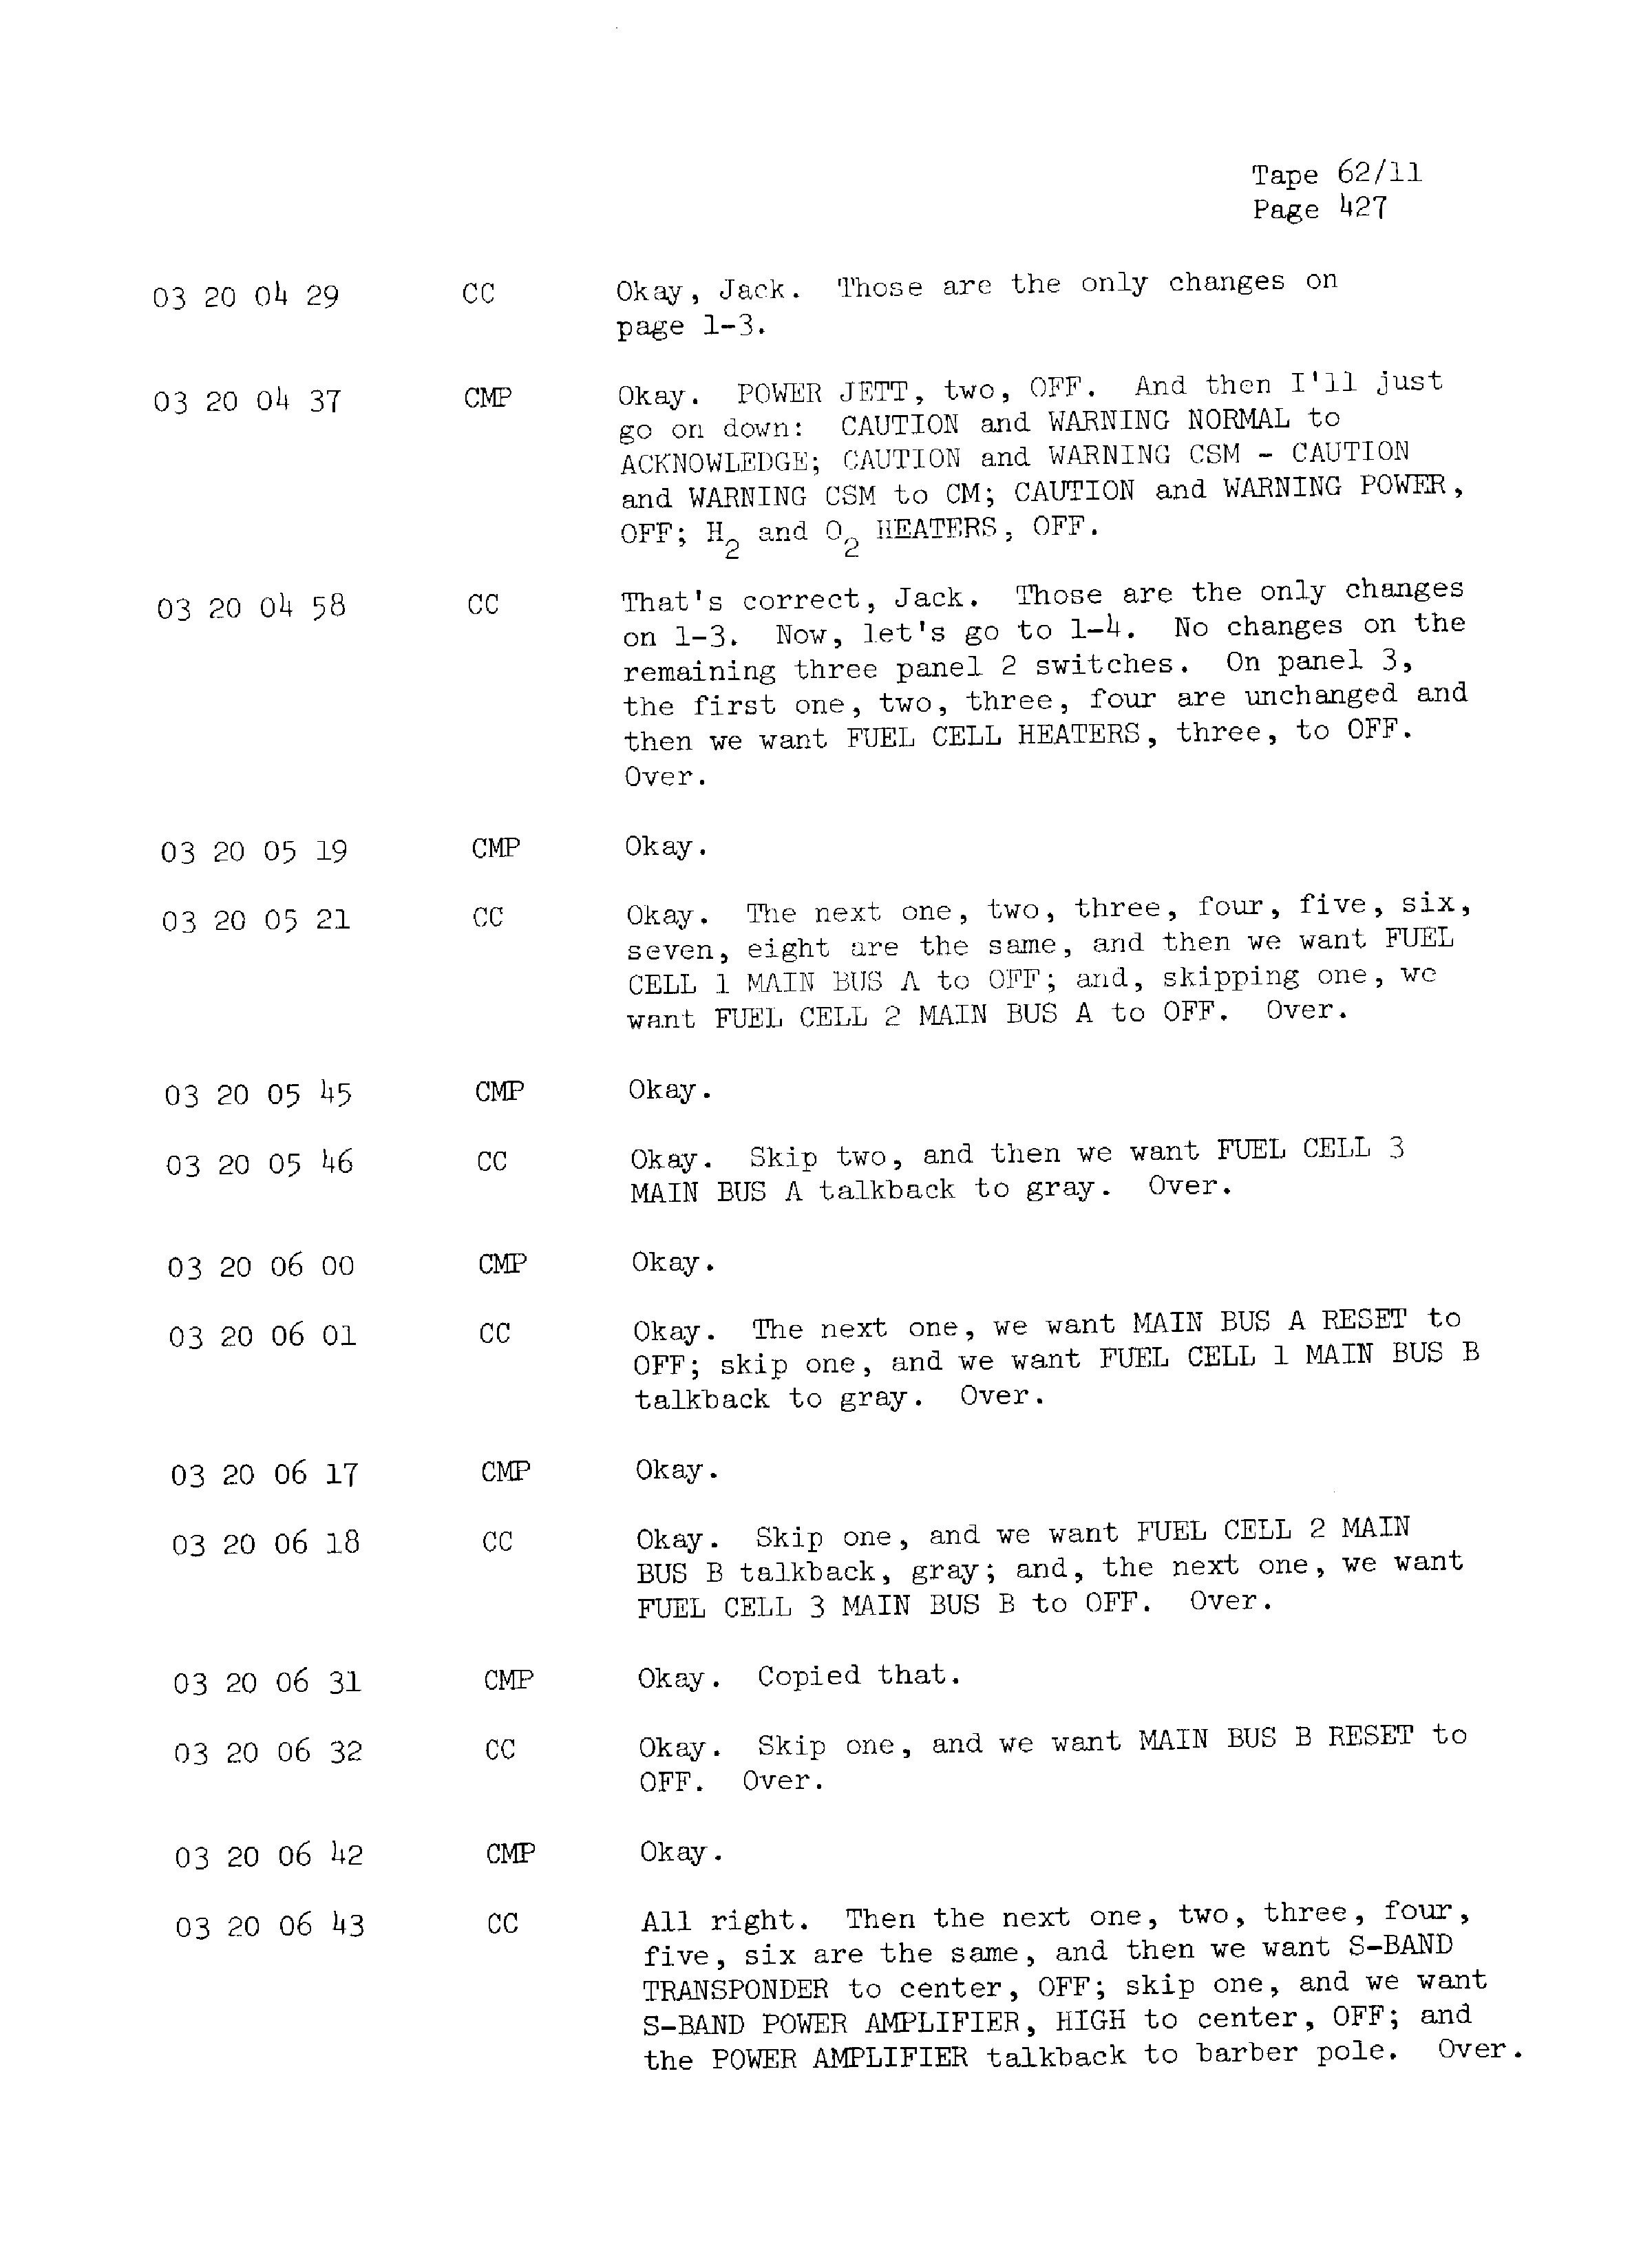 Page 434 of Apollo 13’s original transcript